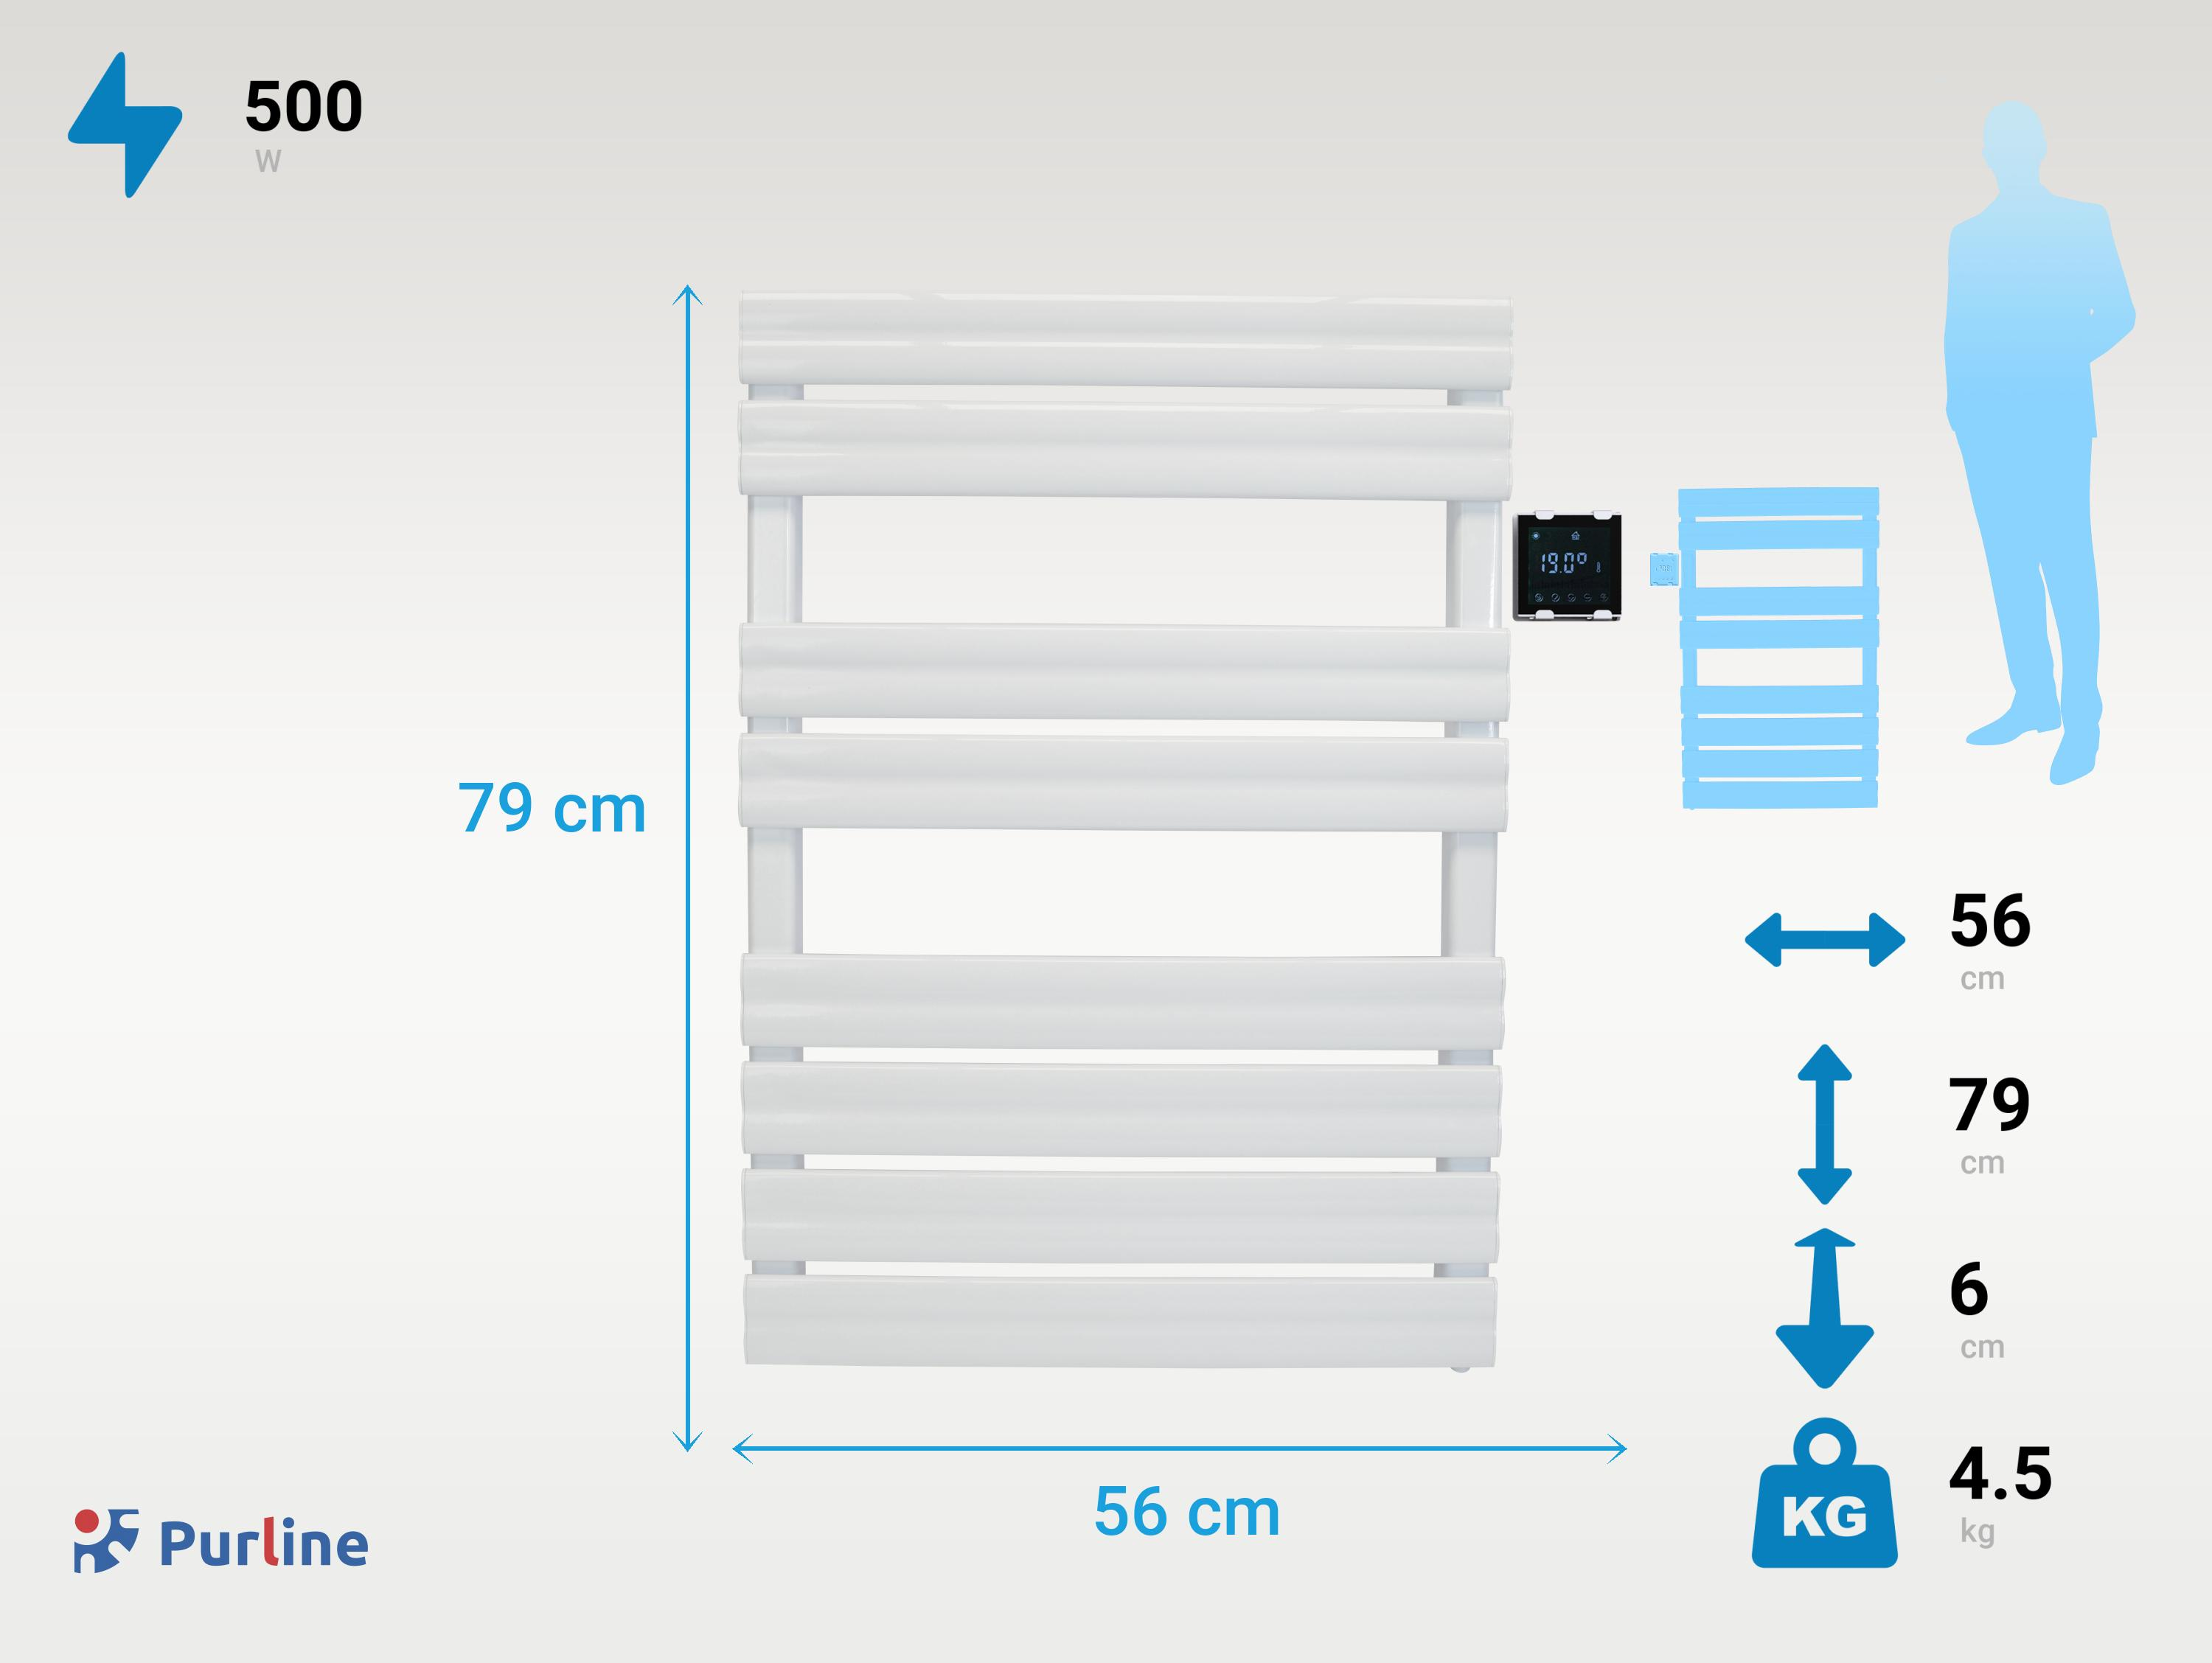 PURLINE Weißer Handtuchhalter mit Steuerung Elektrischer drahtloser Watt) (500 Handtuchhalter